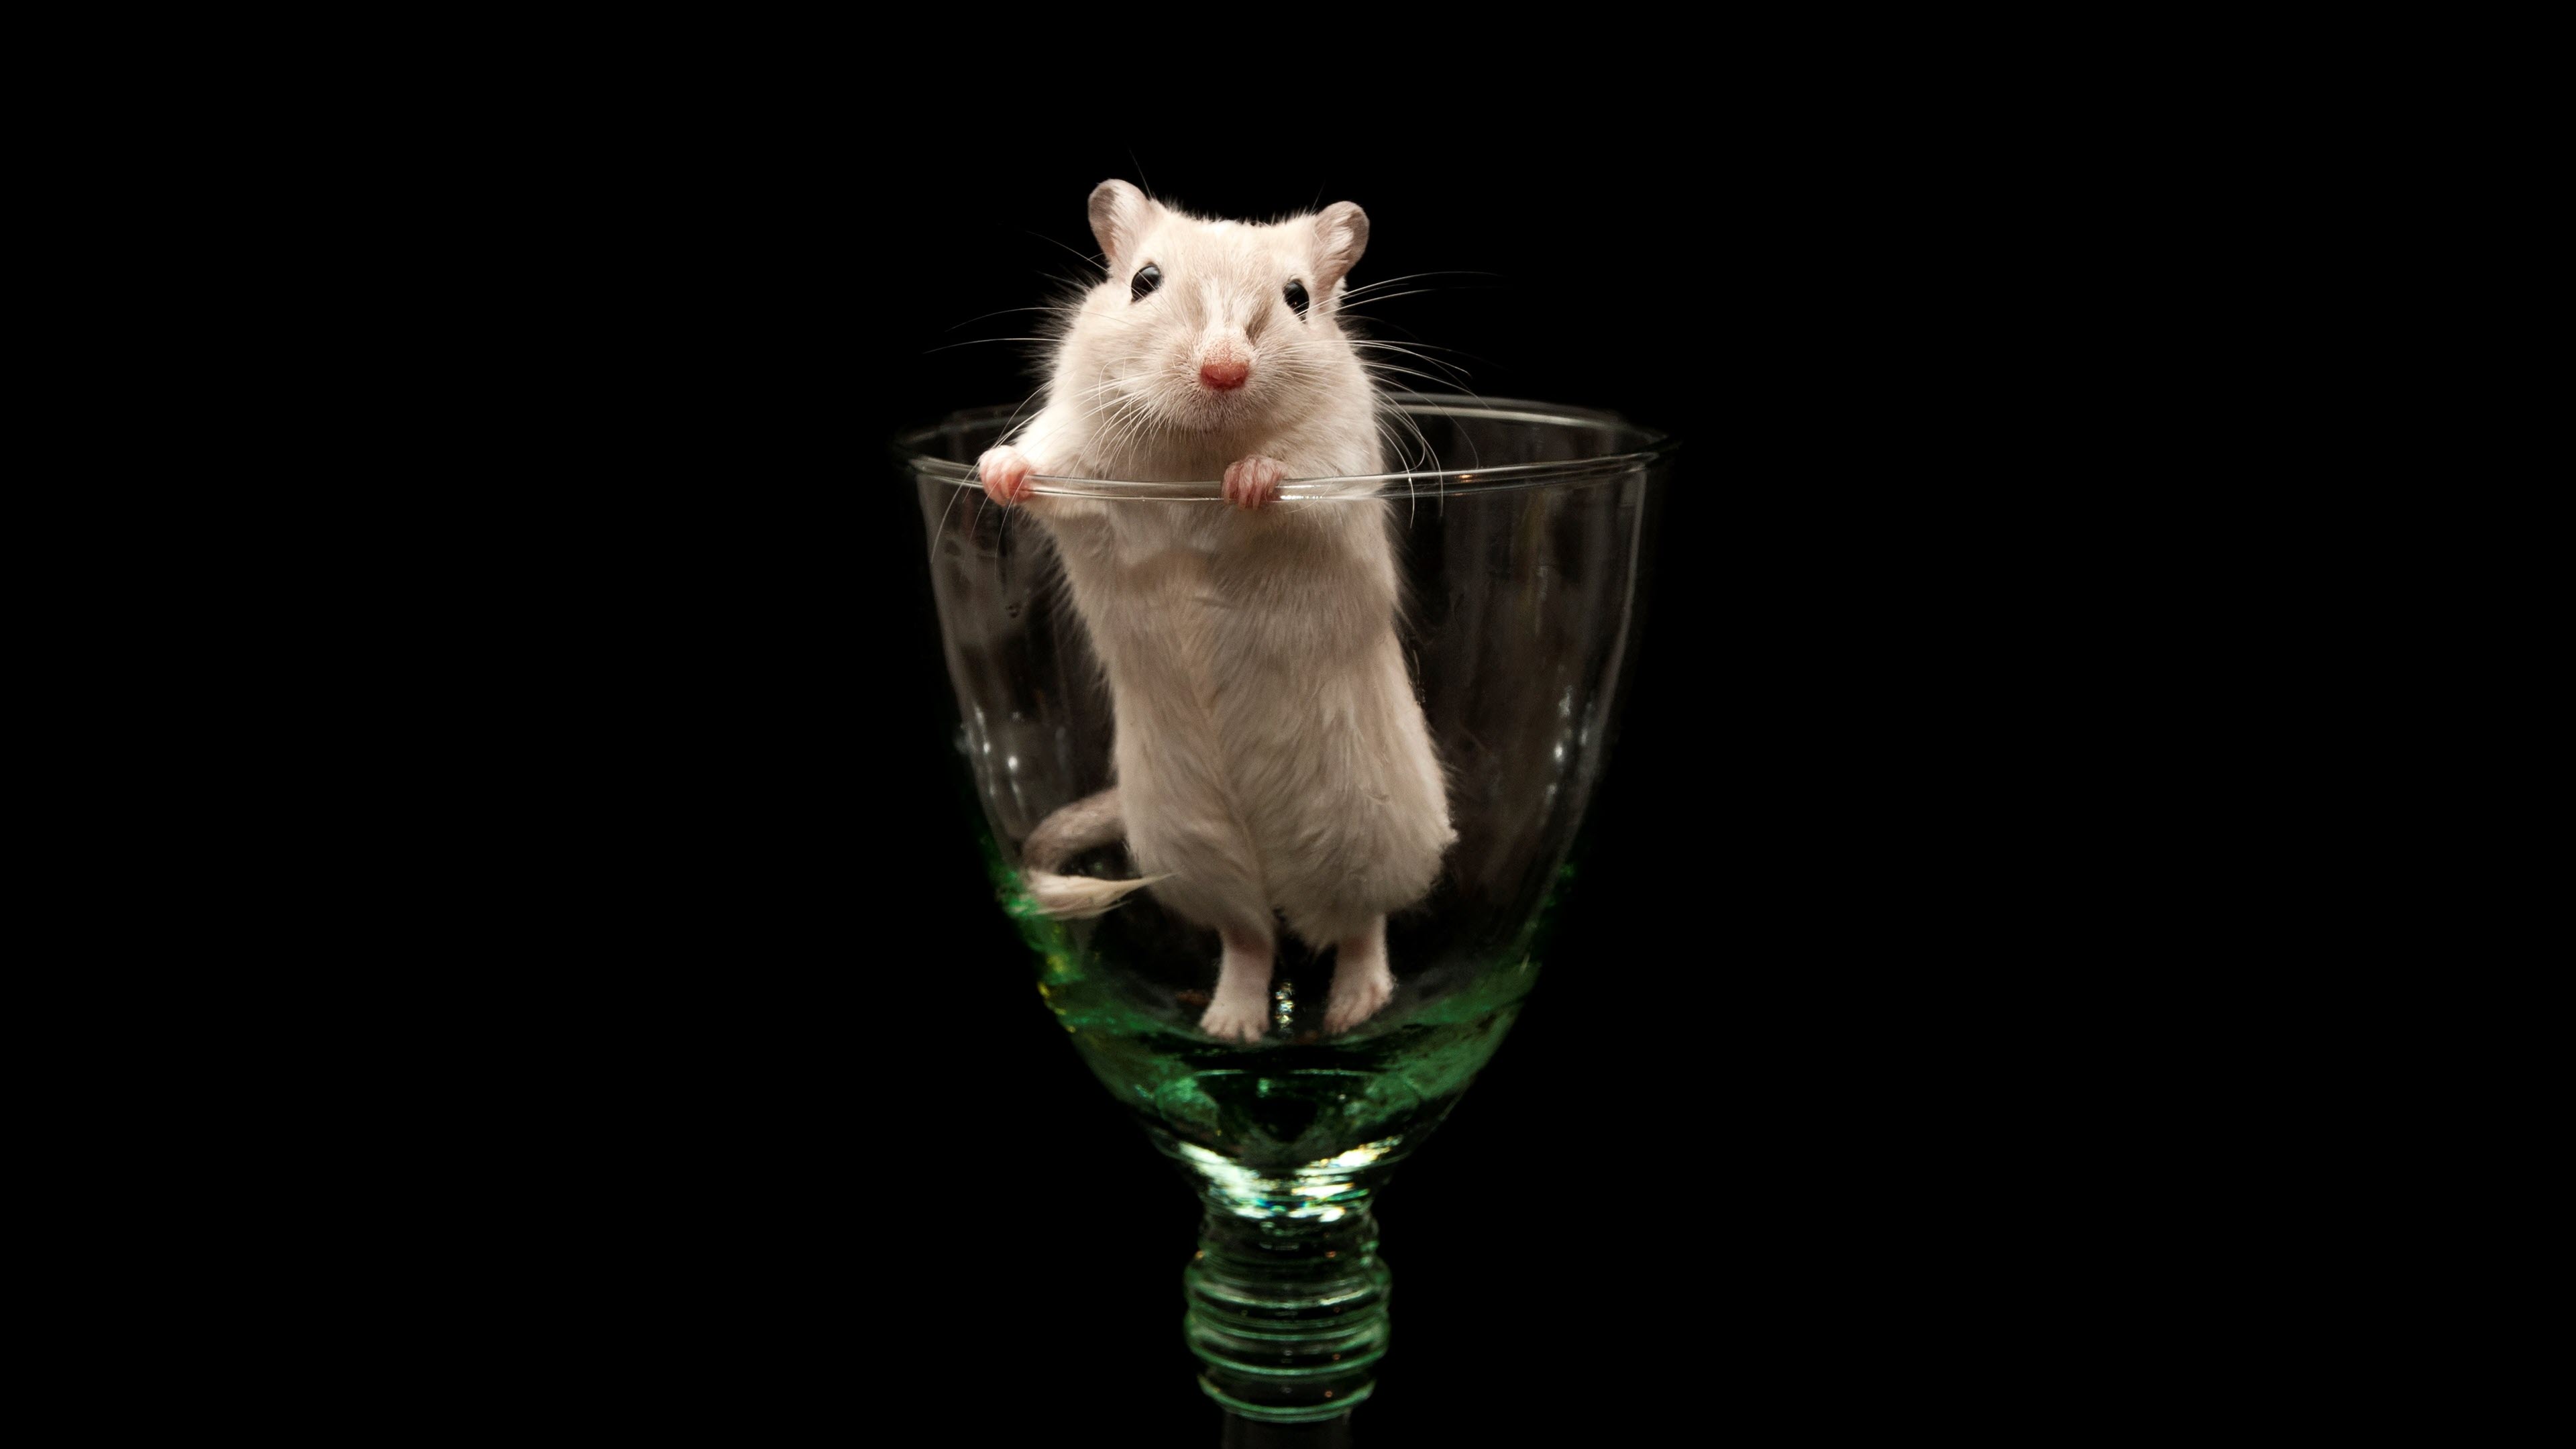 Hamster Vui Chuột đồng động Vật | Nền JPG Tải xuống miễn phí - Pikbest